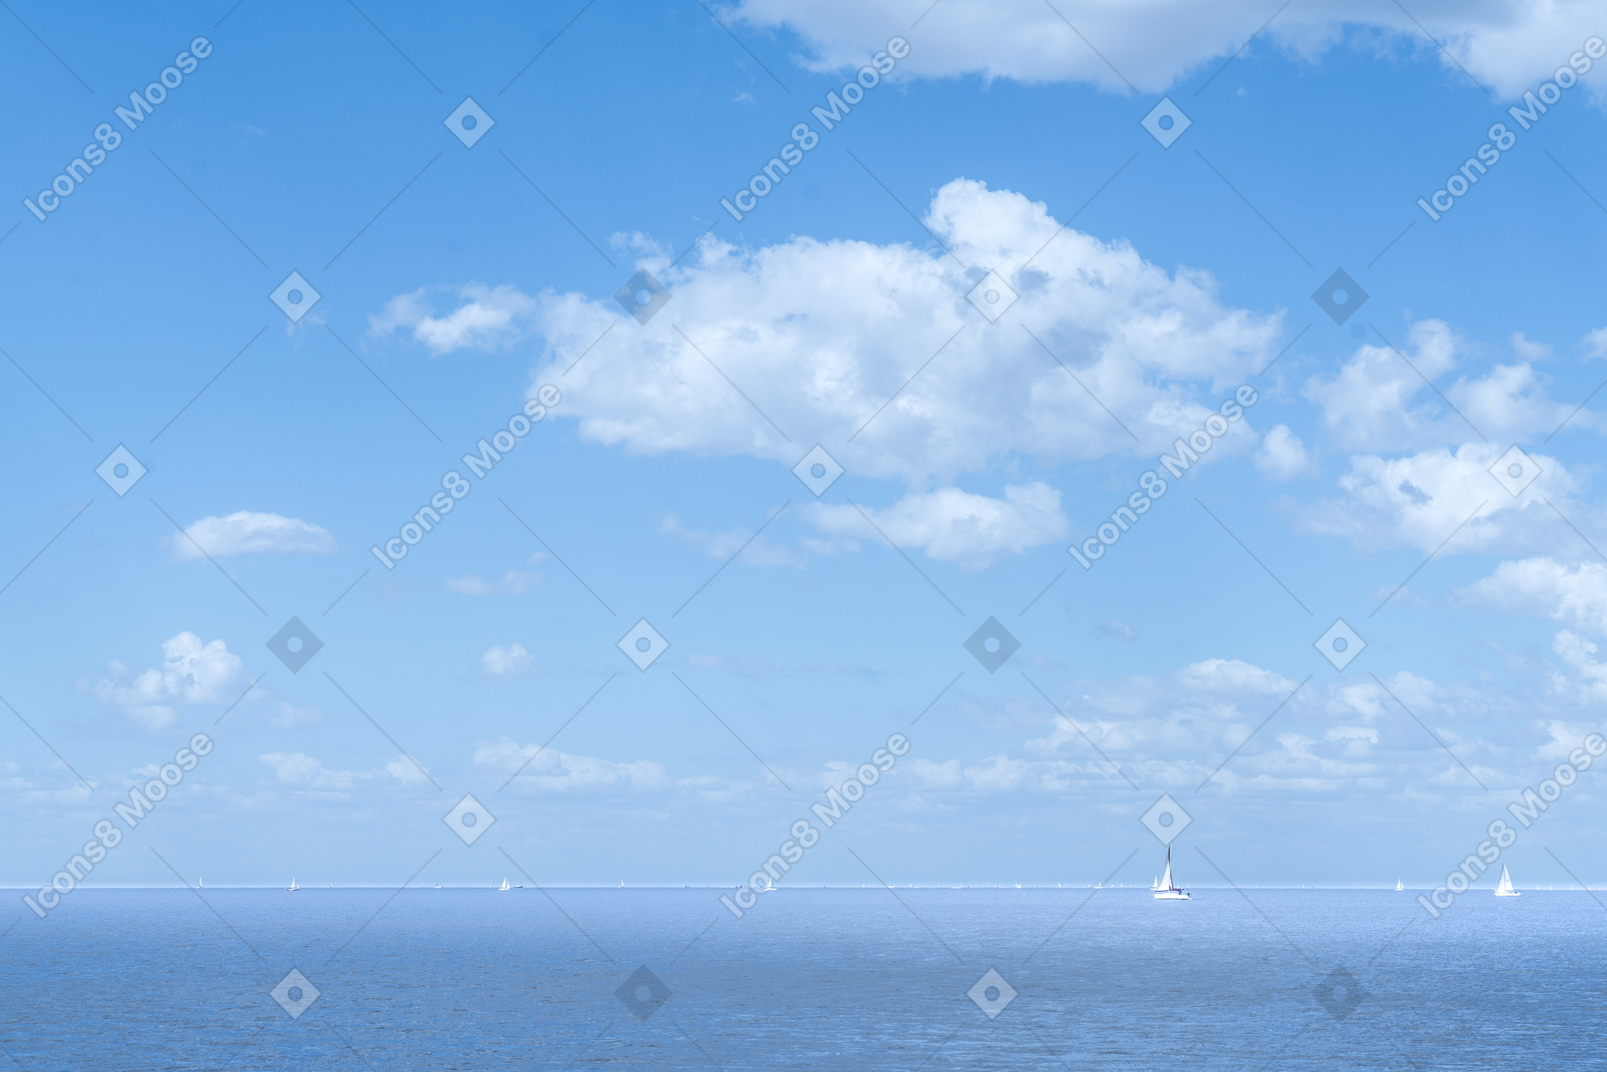 Vista panoramica delle barche che navigano in una giornata di sole